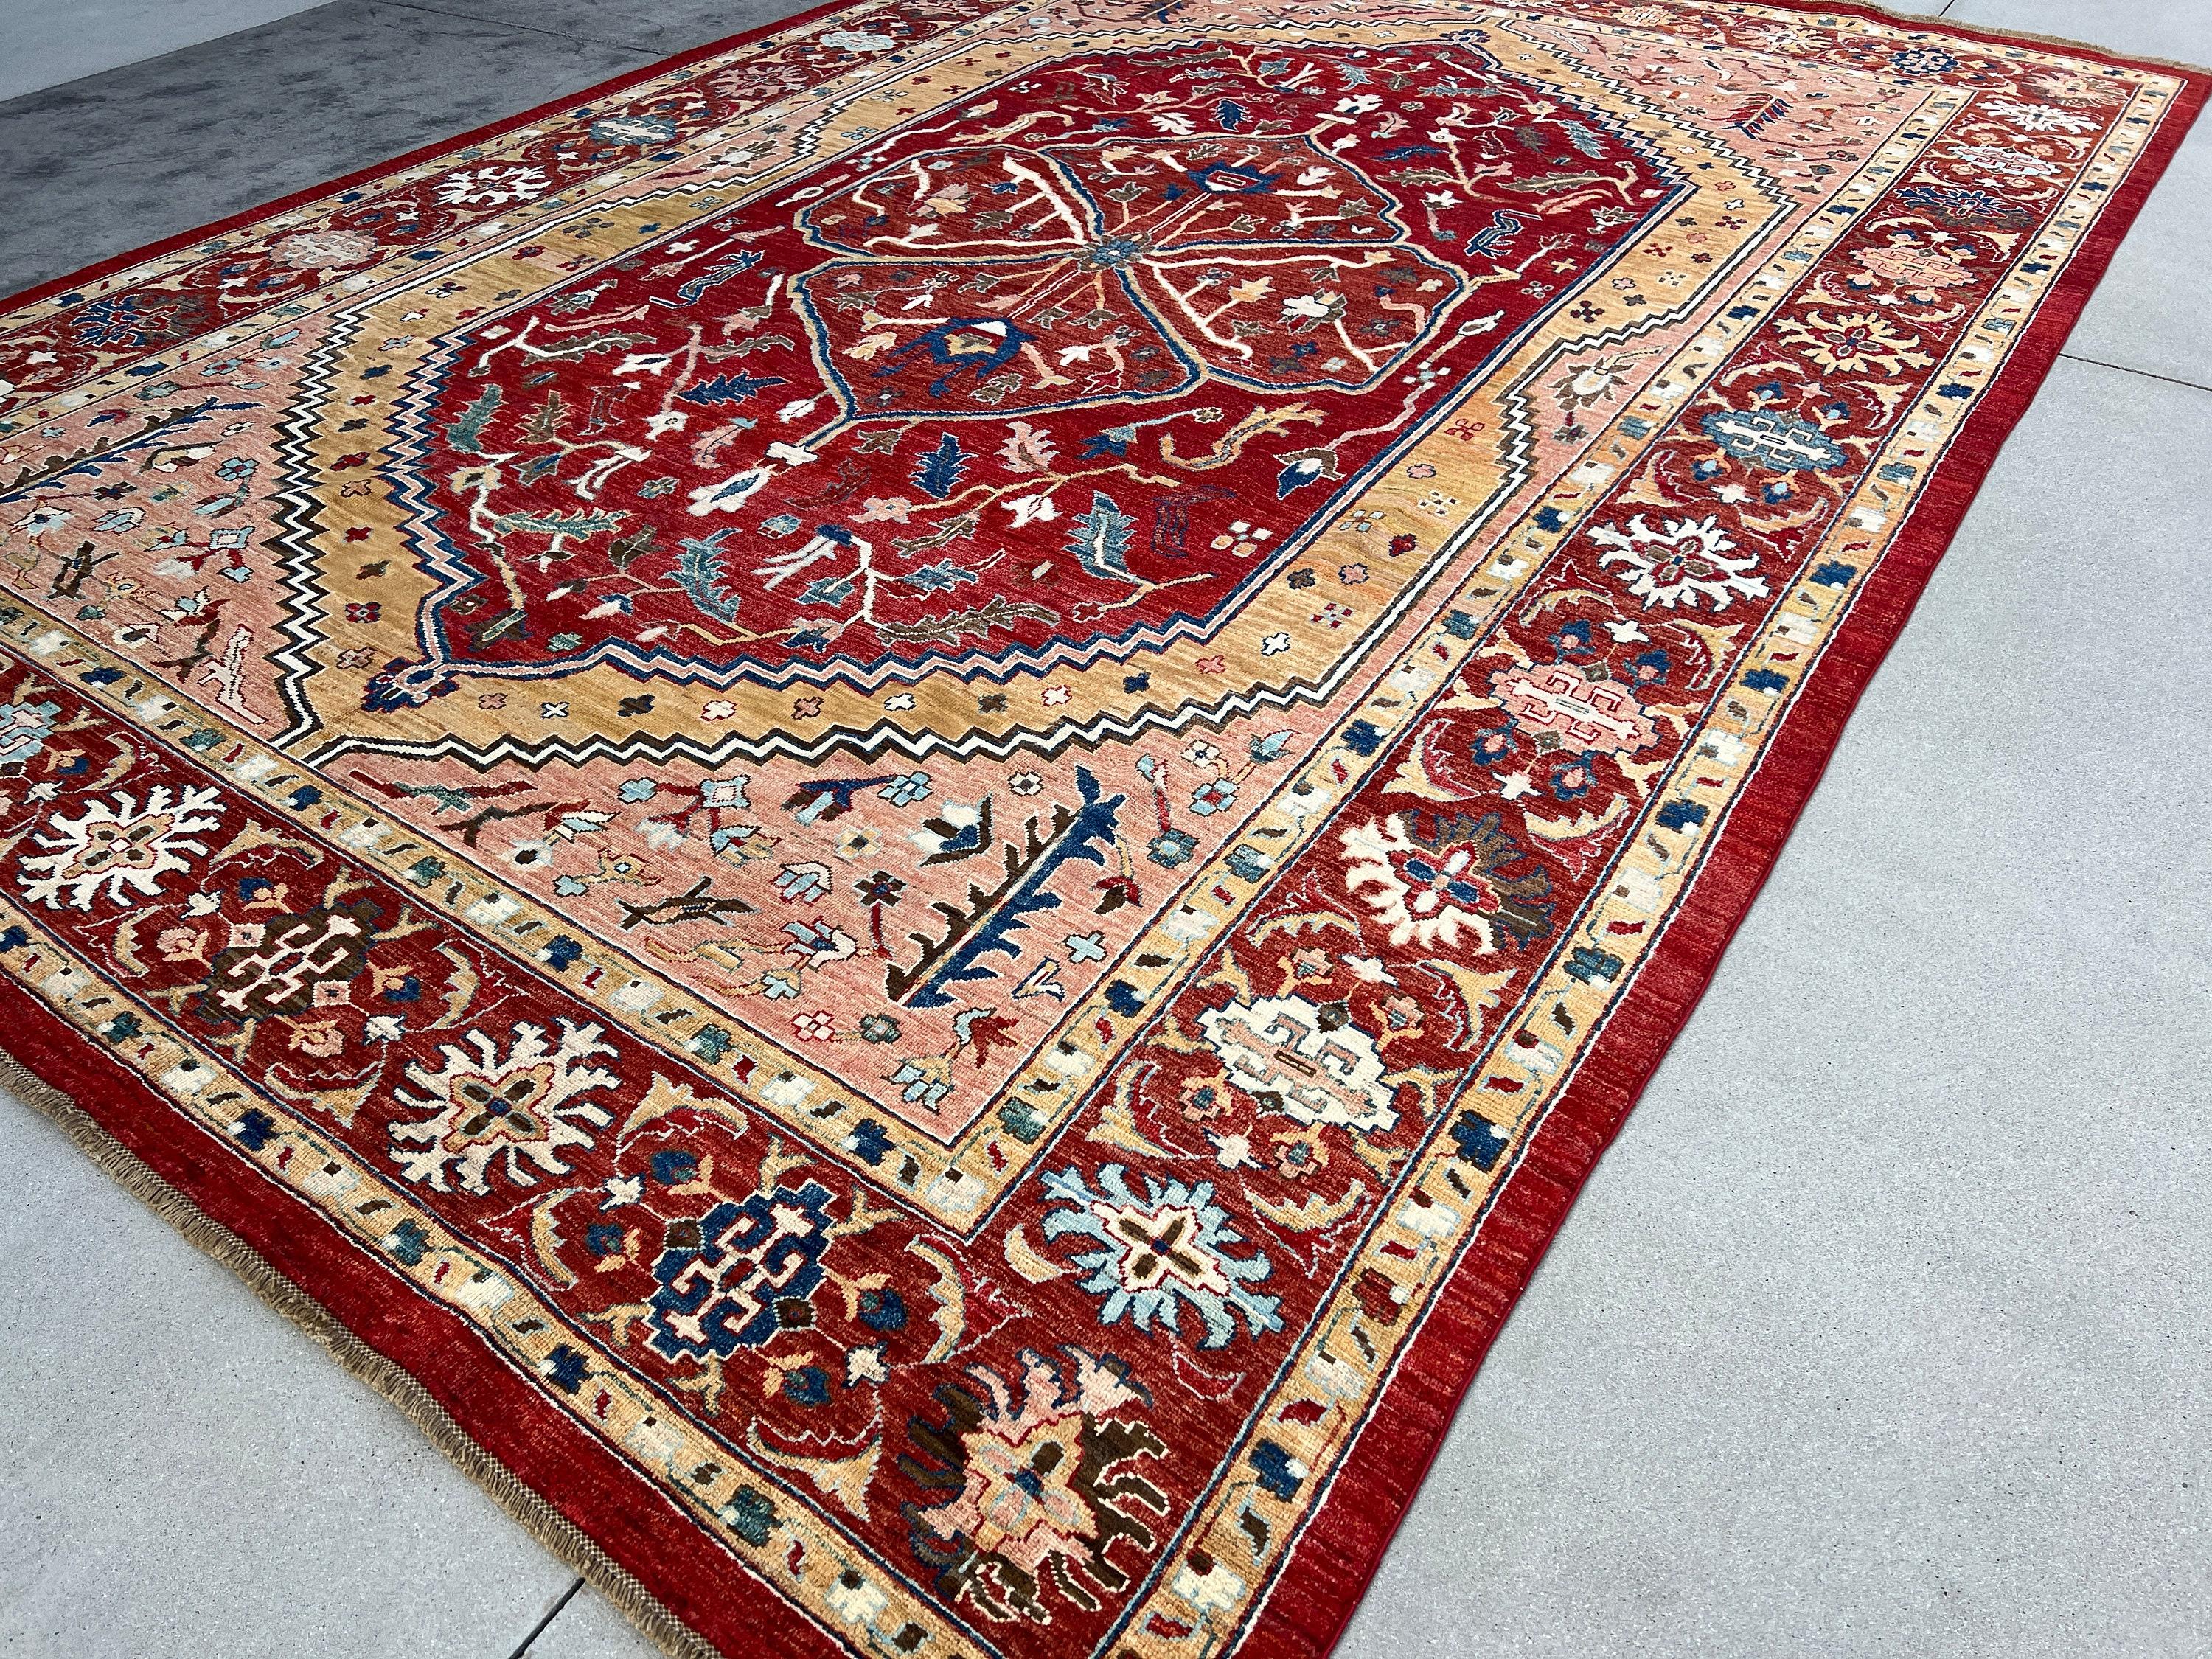 fair trade rugs